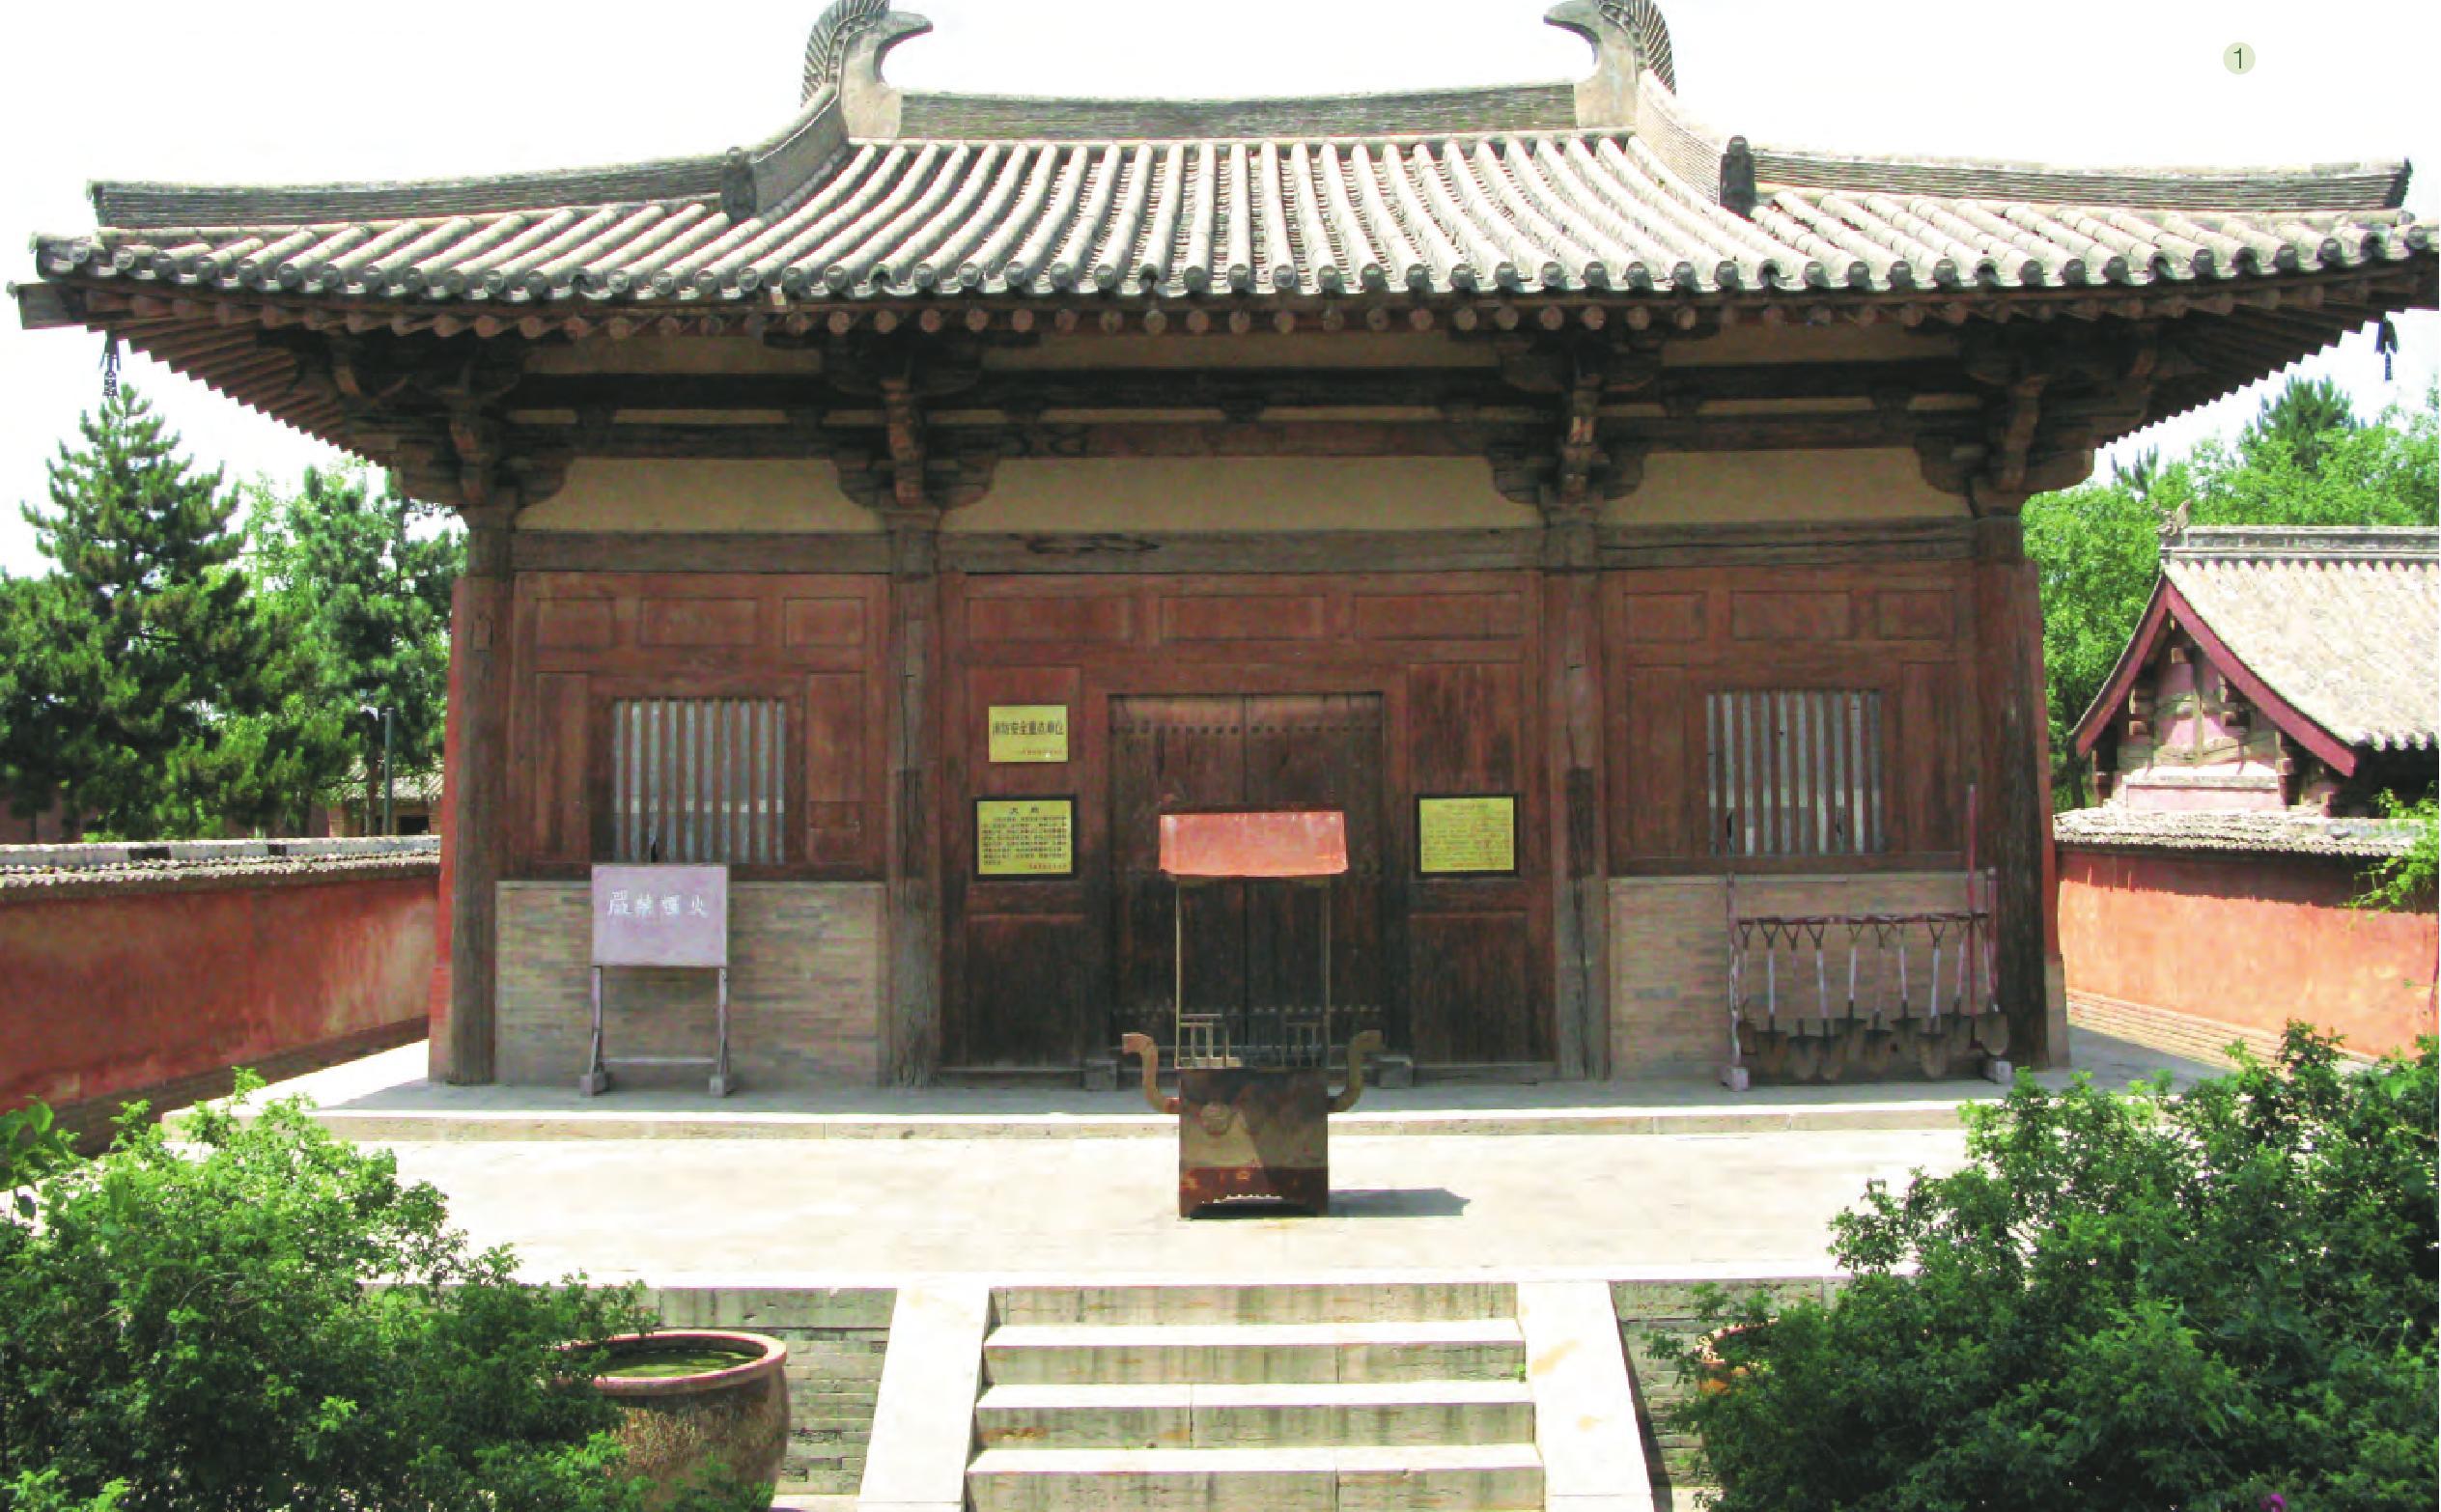 南禅寺大殿——中国及亚洲最古老的木构建筑